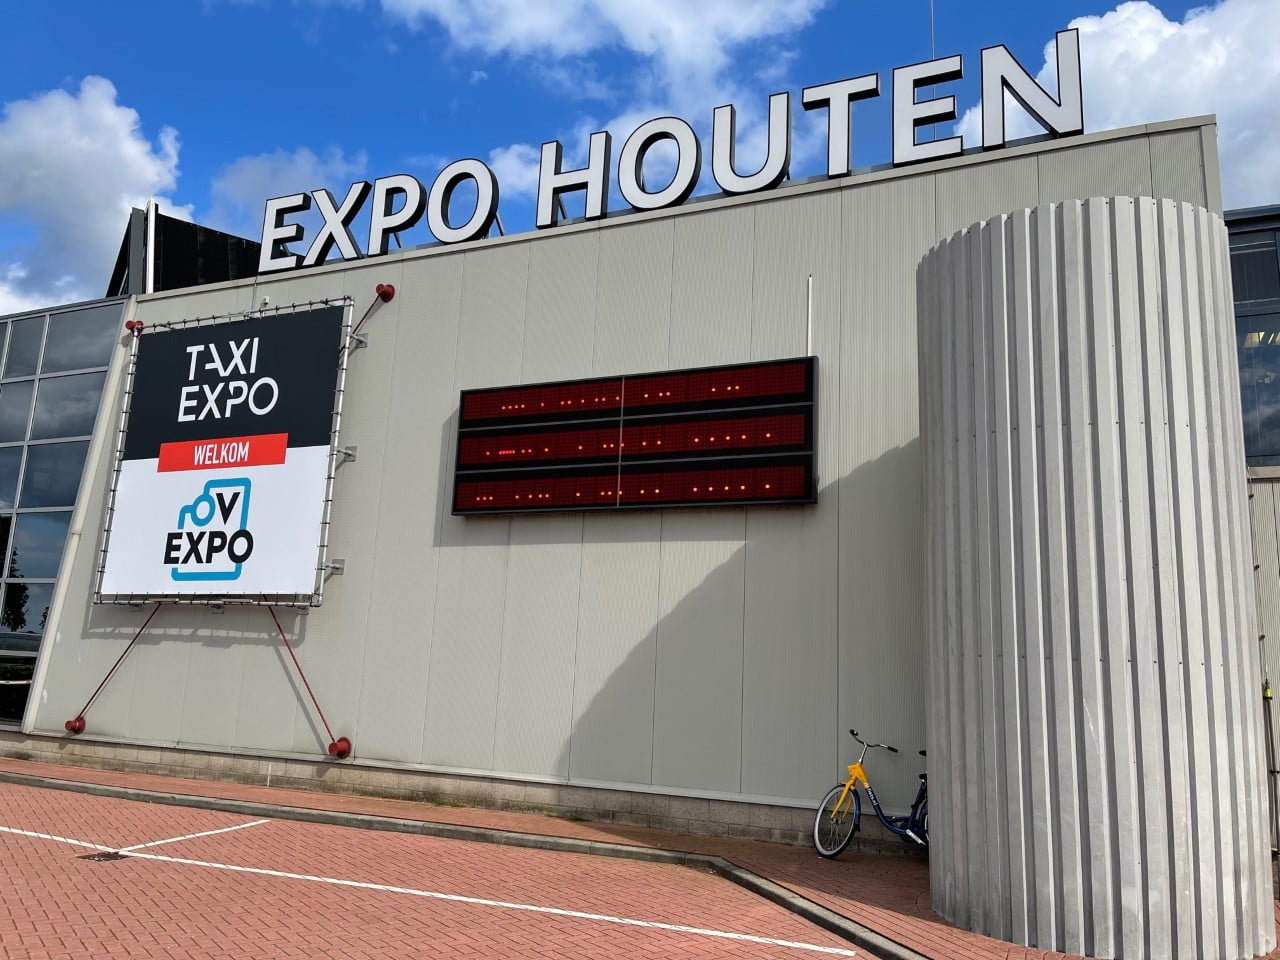 Taxi Expo, et særligt mødested